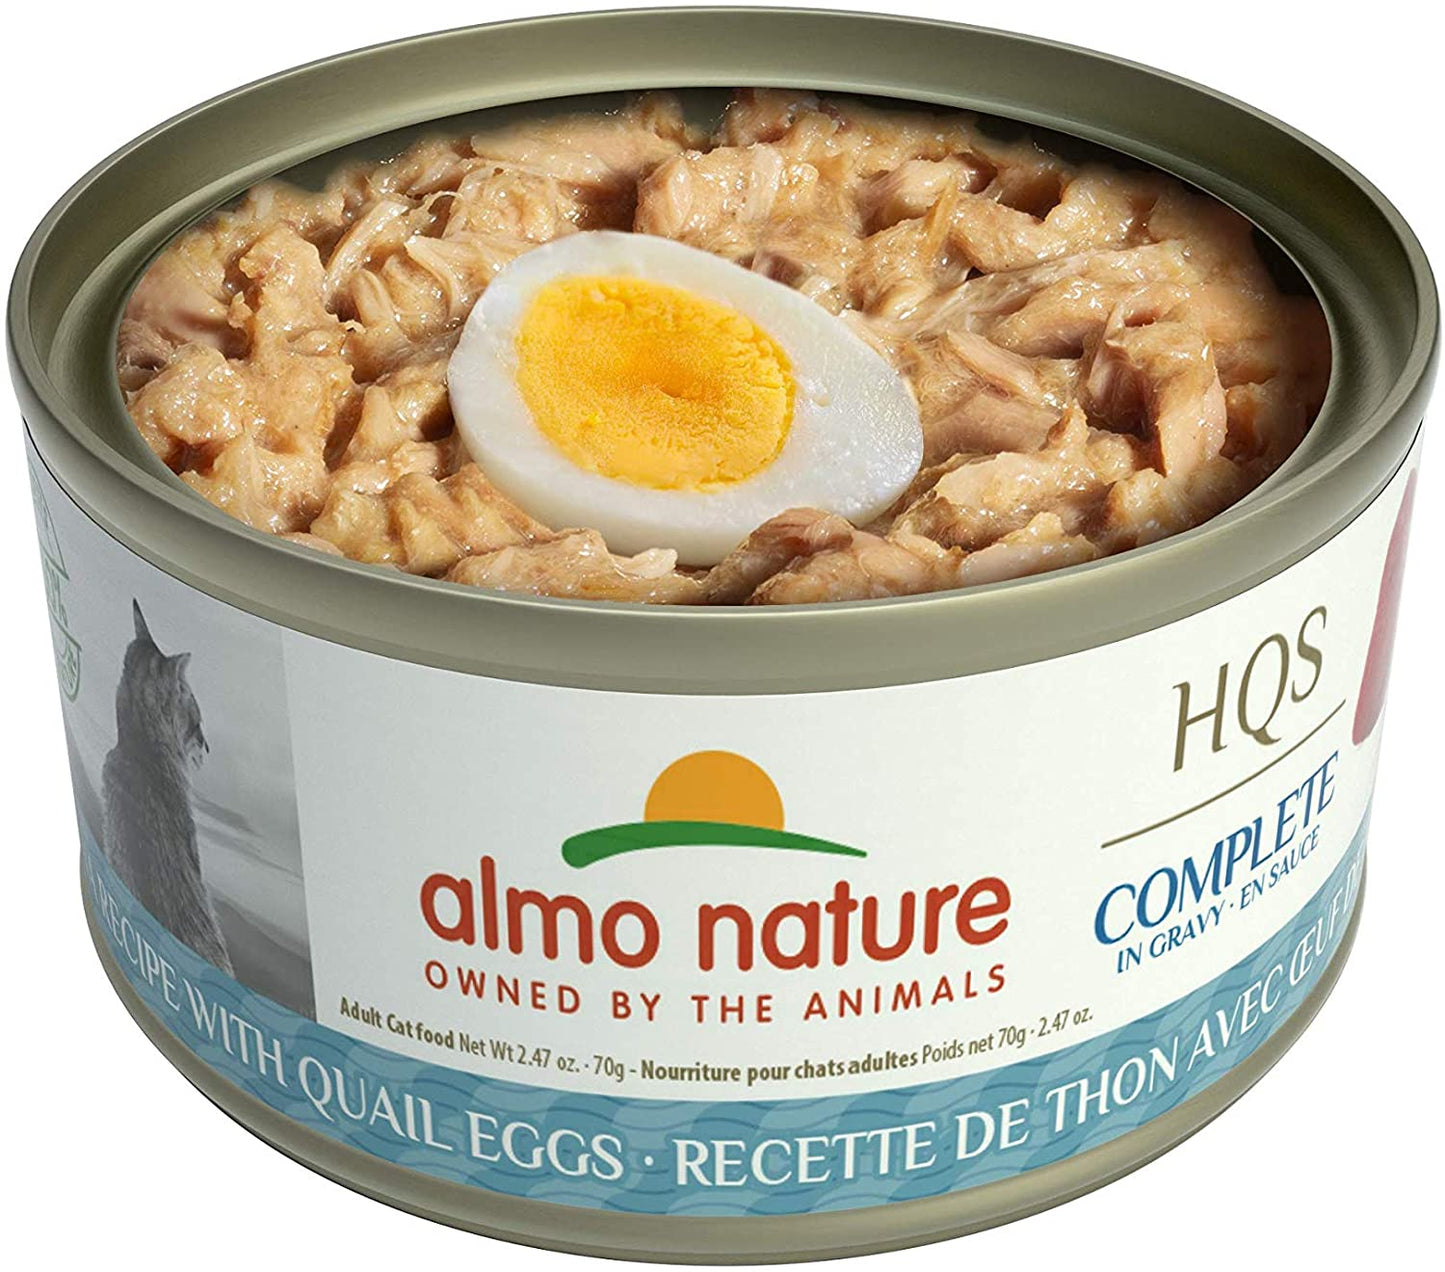 Almo Nature Complete - Tuna with Quail Eggs in Gravy, 2.47oz